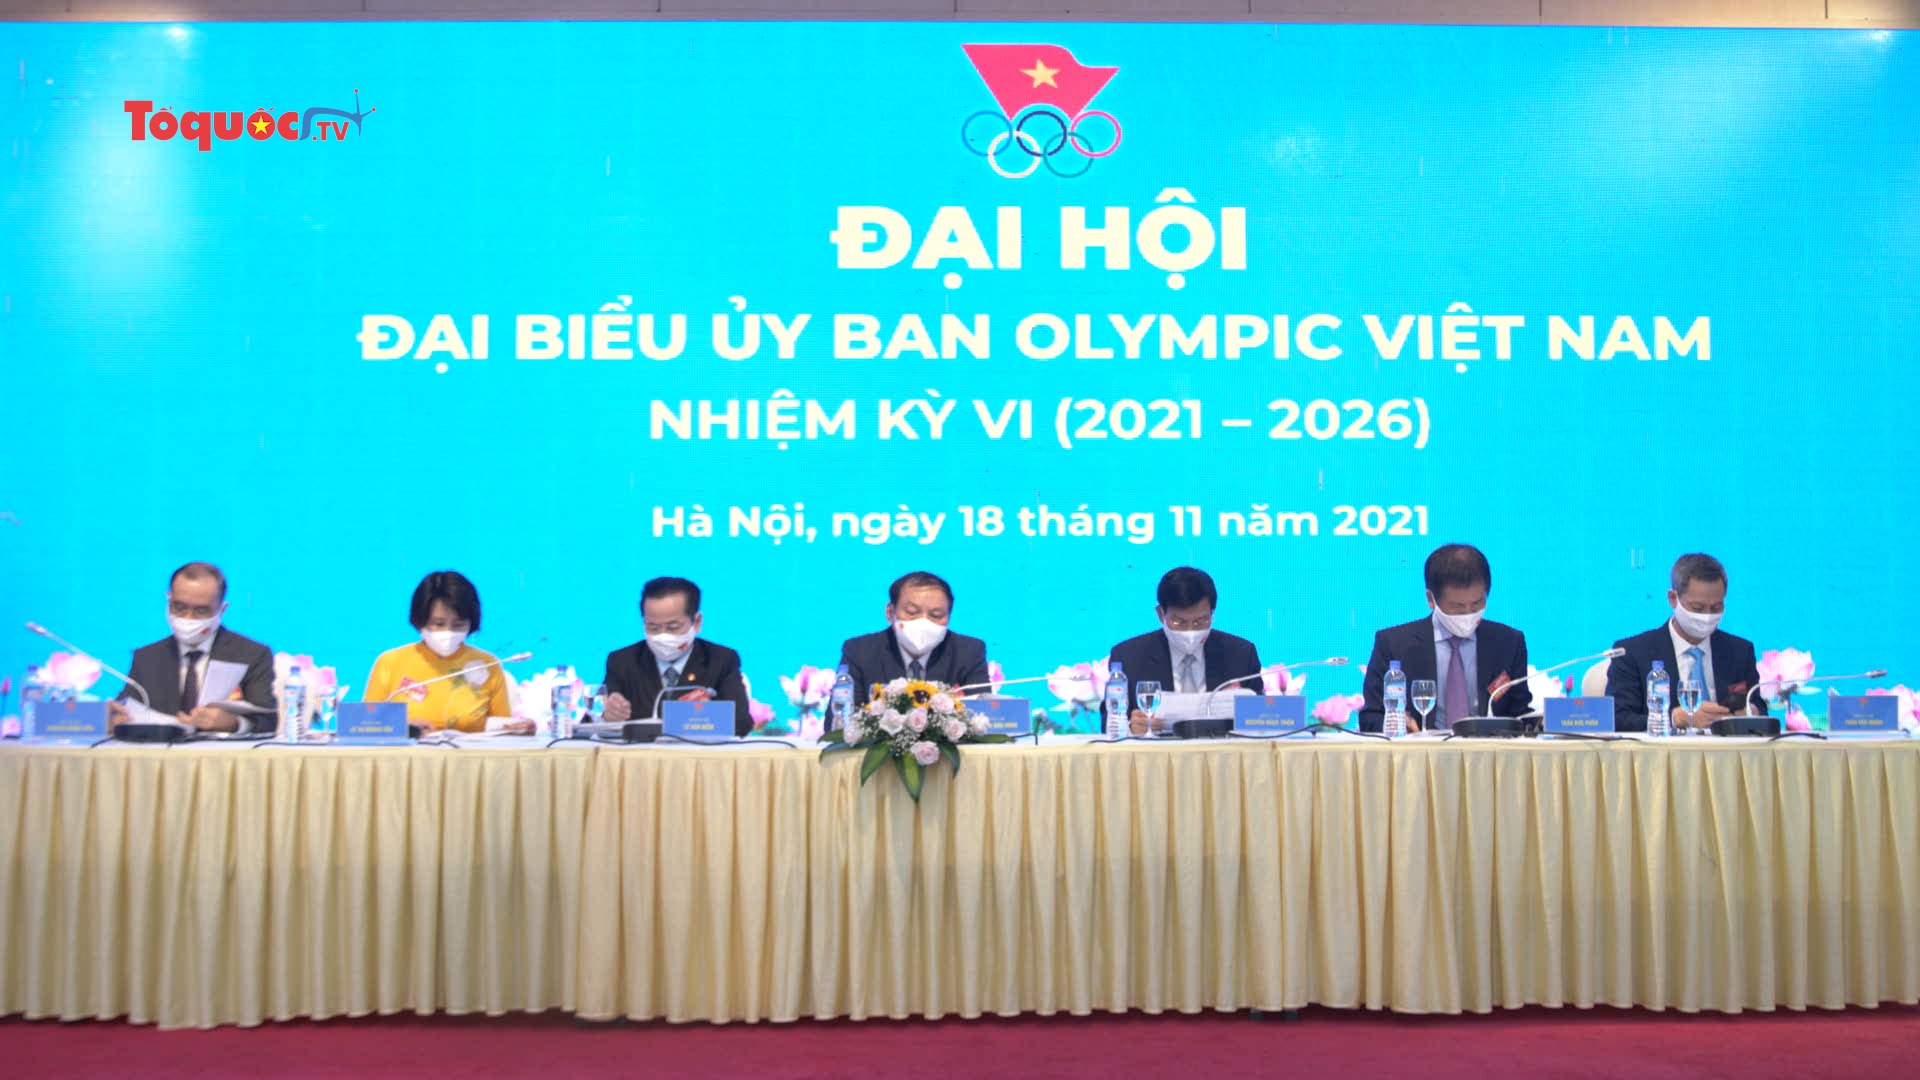 Bộ trưởng Bộ VHTTDL Nguyễn Văn Hùng là Chủ tịch Ủy ban Olympic Việt Nam